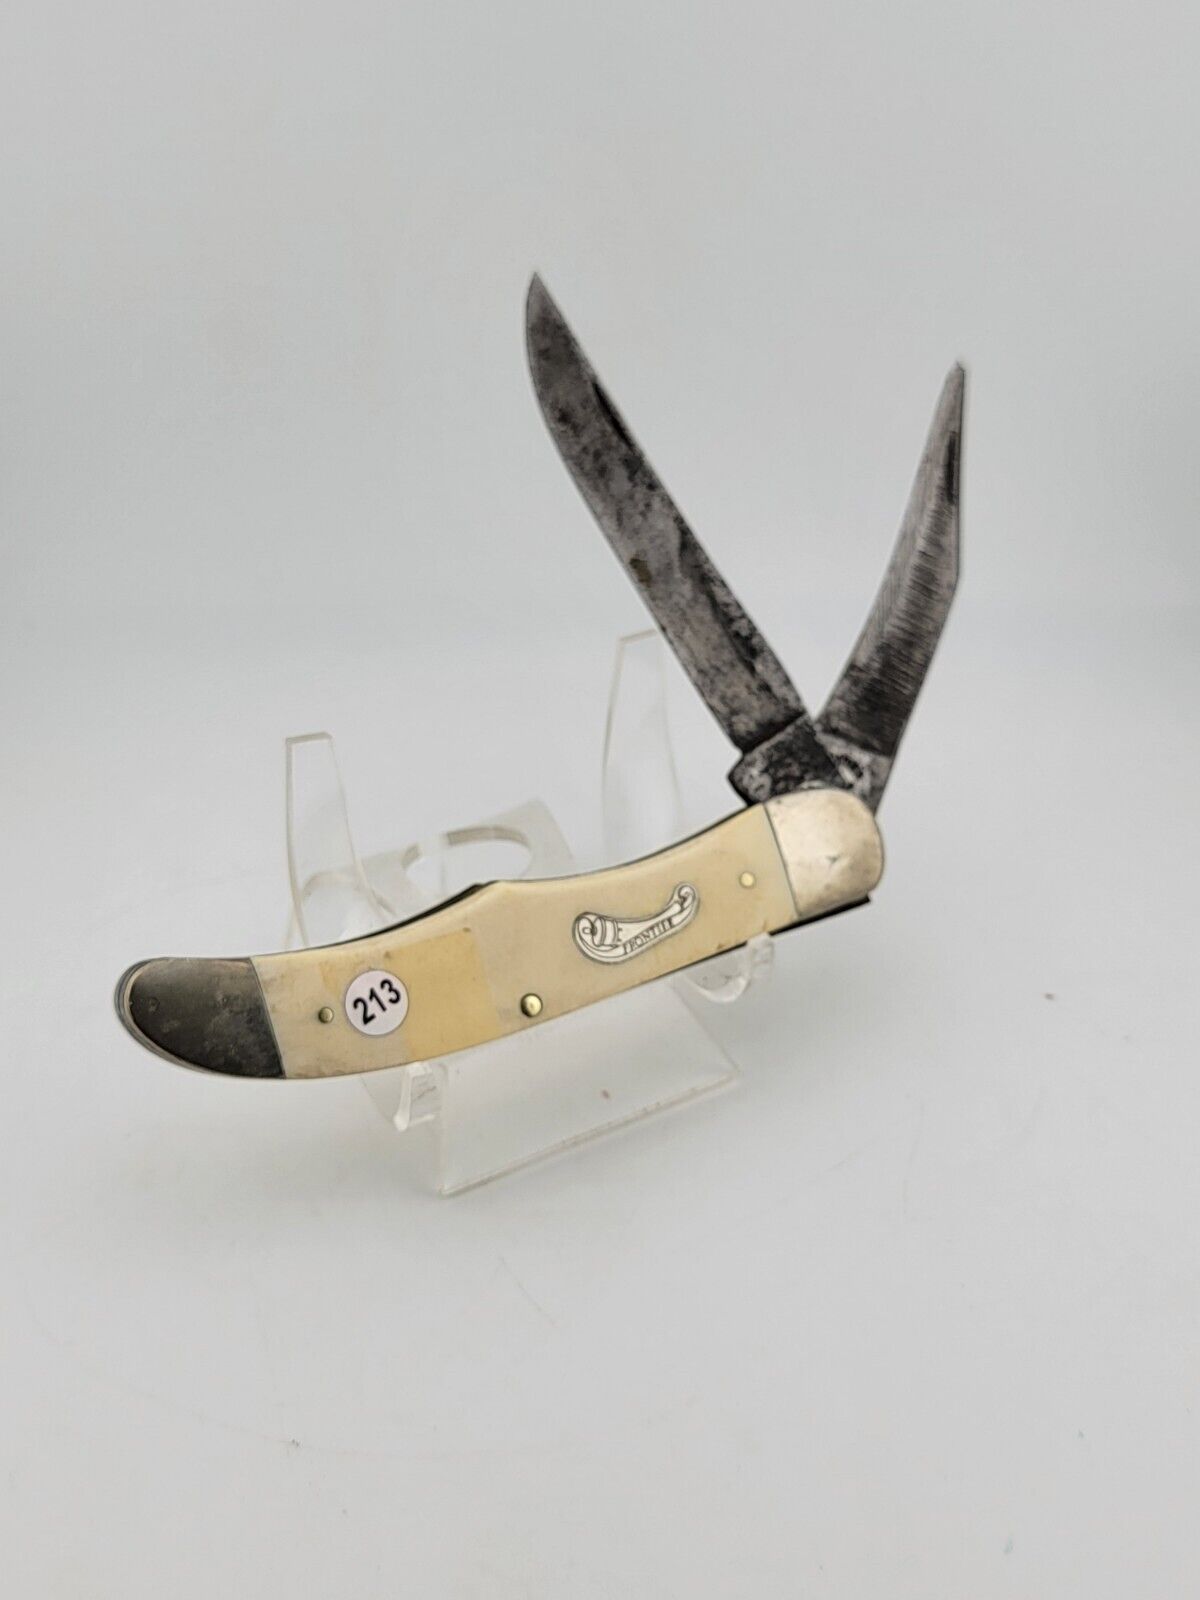 Rare Frontier Imperial U.S.A. 2 Blade Vintage Large Pocket Knife 4622